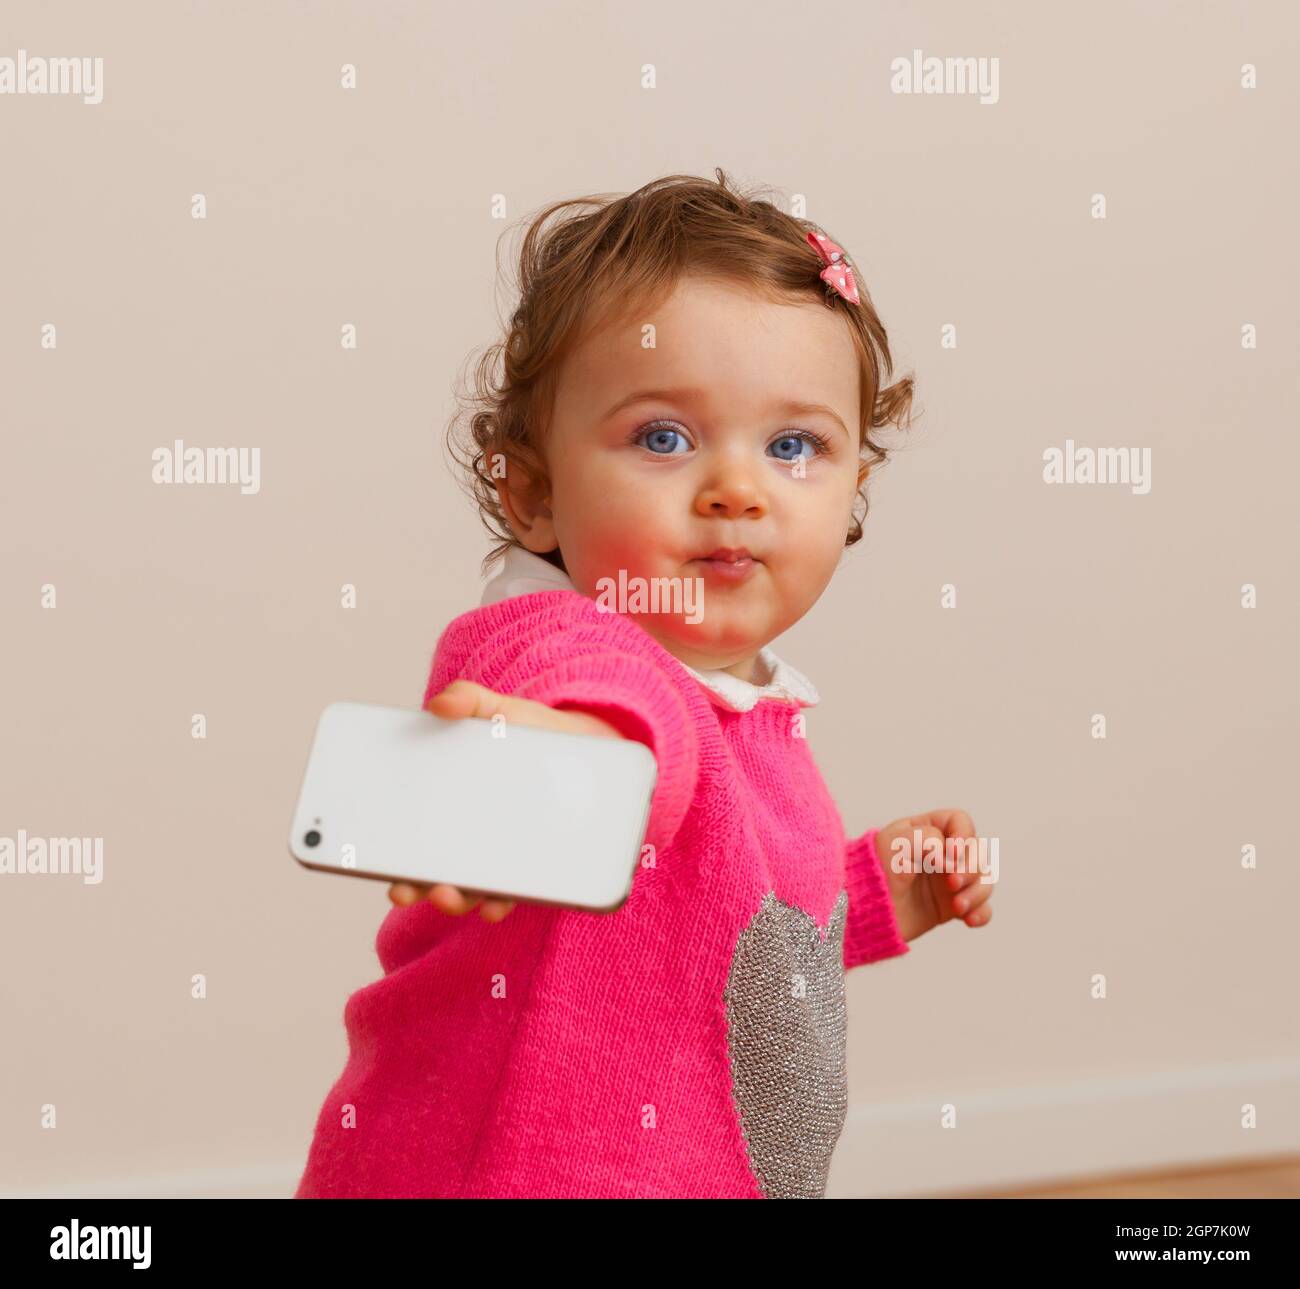 Bébé Enfant fille joue avec smart phone. Concept de problème social. Banque D'Images